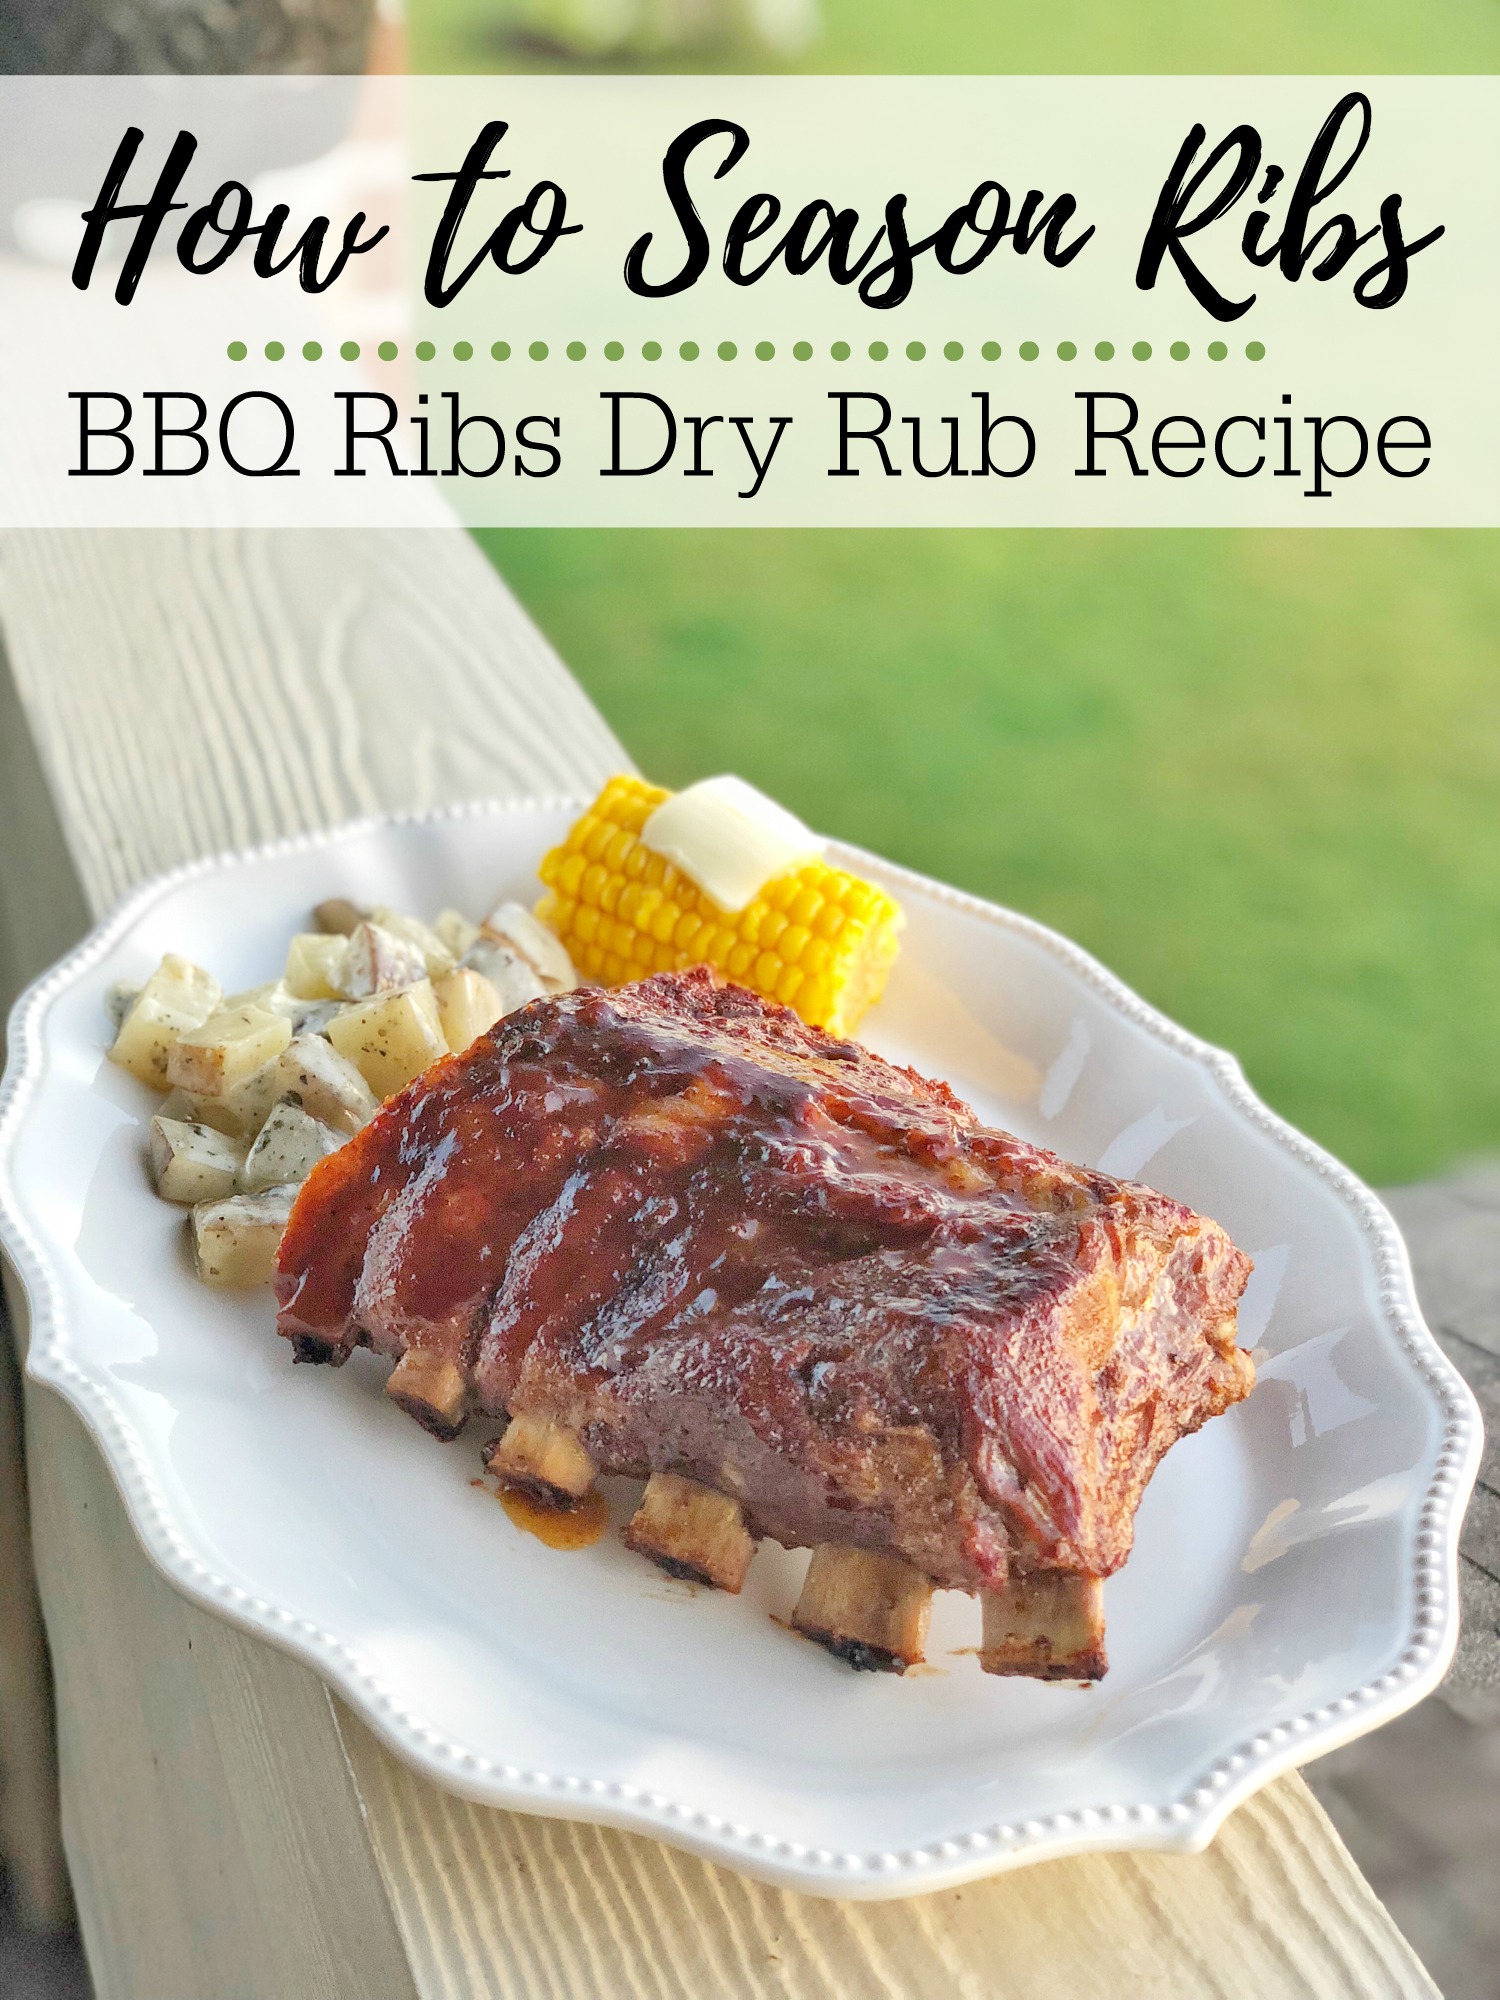 How to Season Ribs - BBQ Ribs Dry Rub Recipe